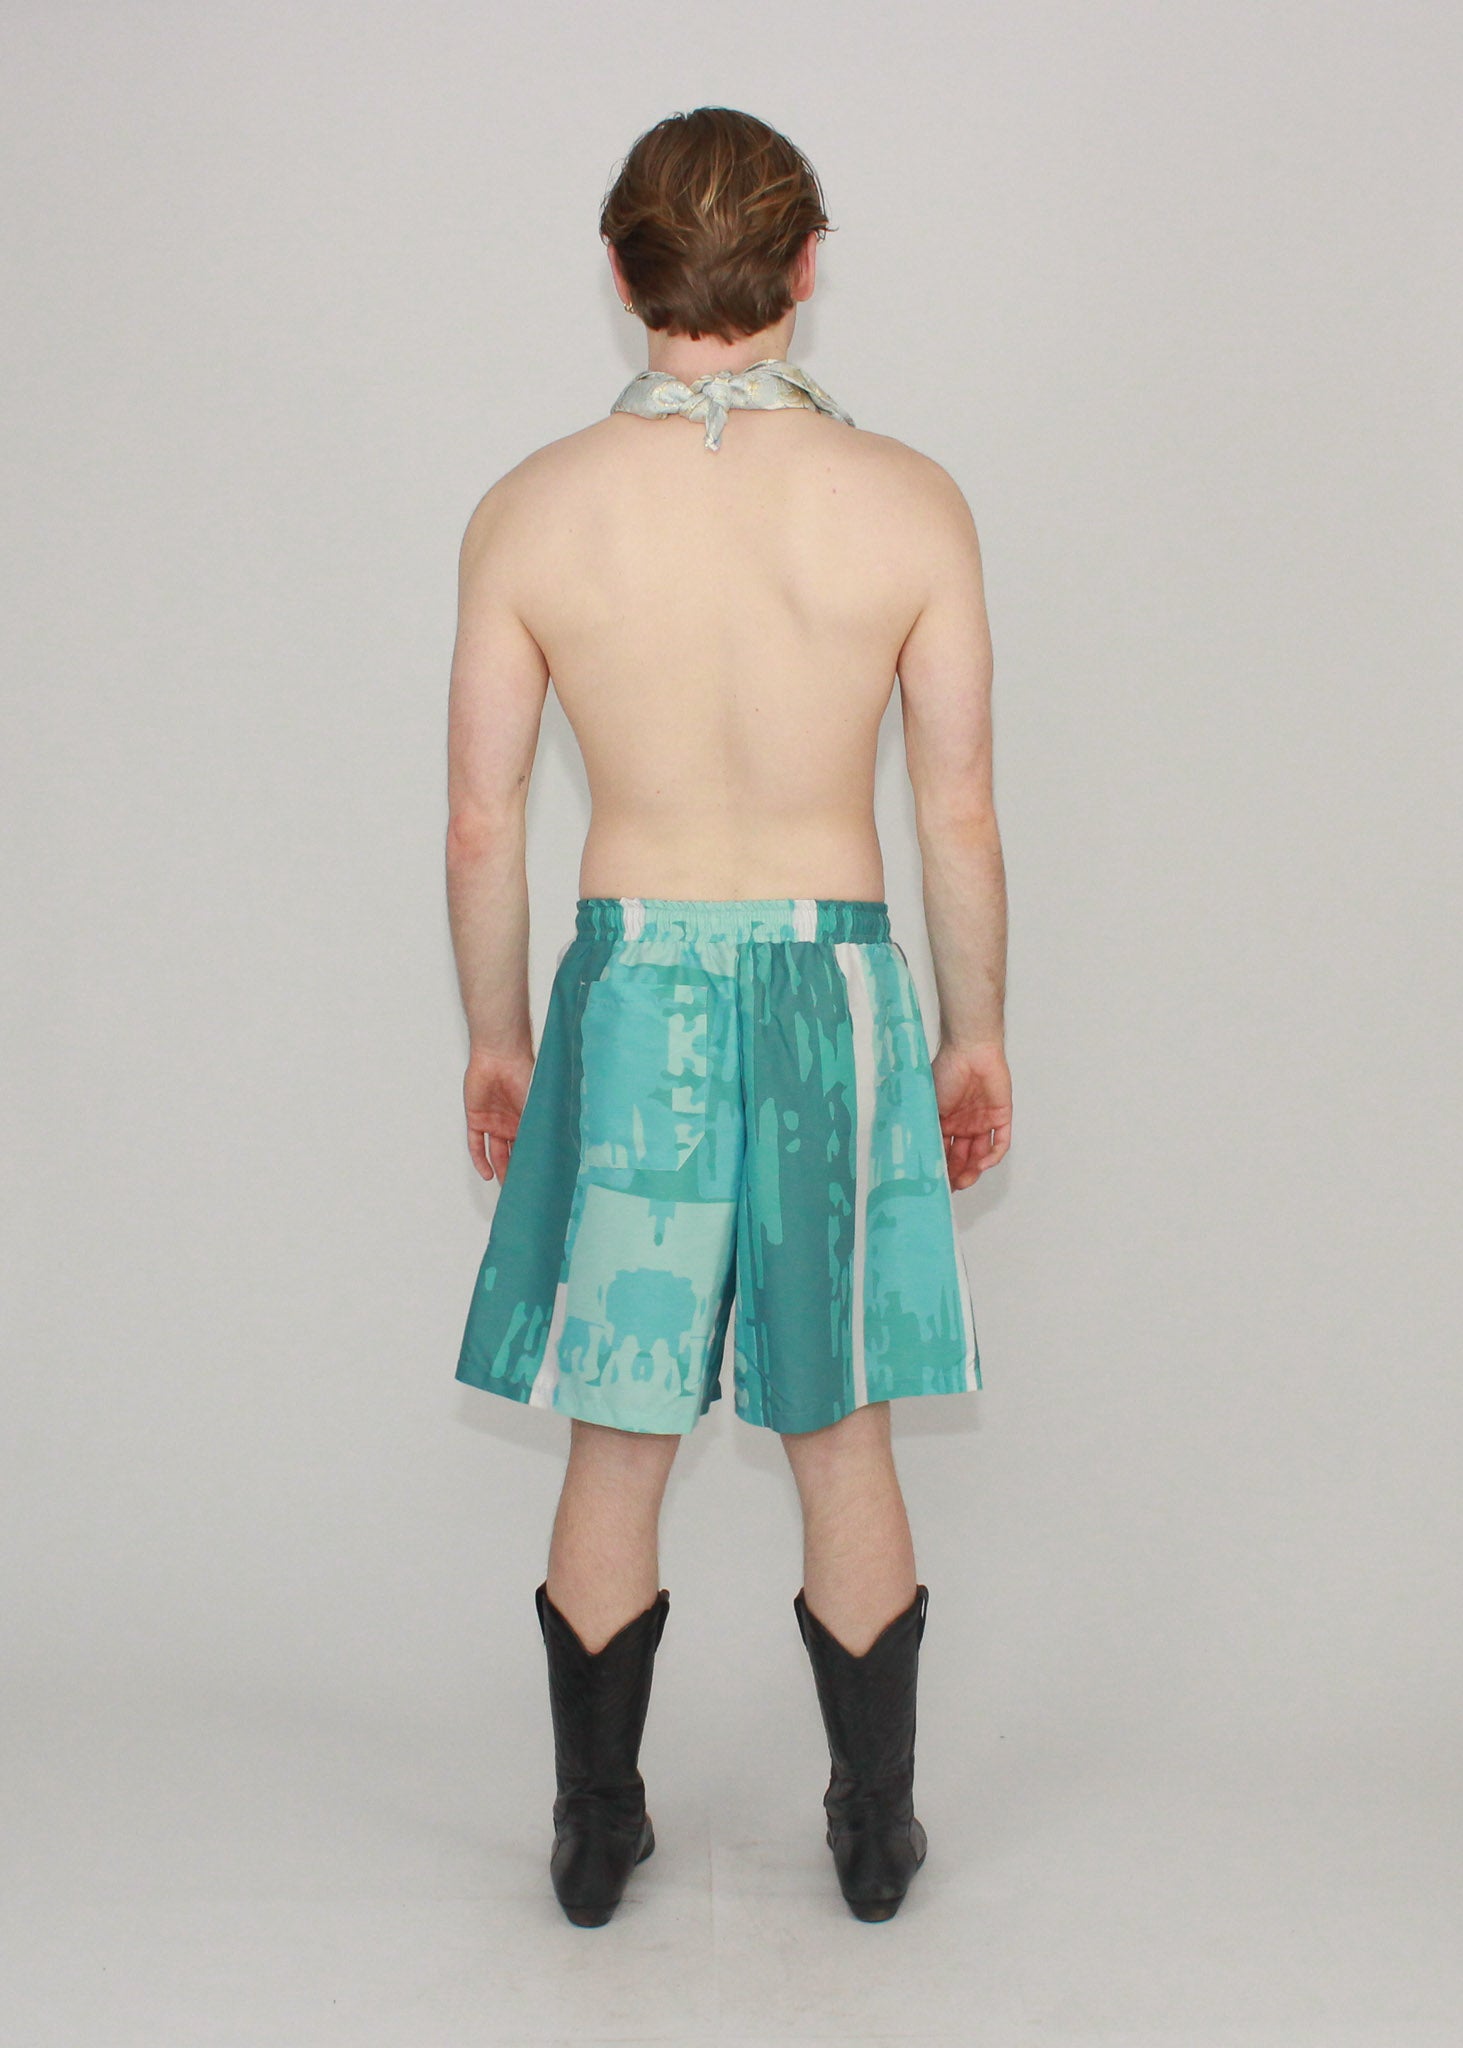 Nikolaj Storm Copenhagen  Cyrus Shorts 